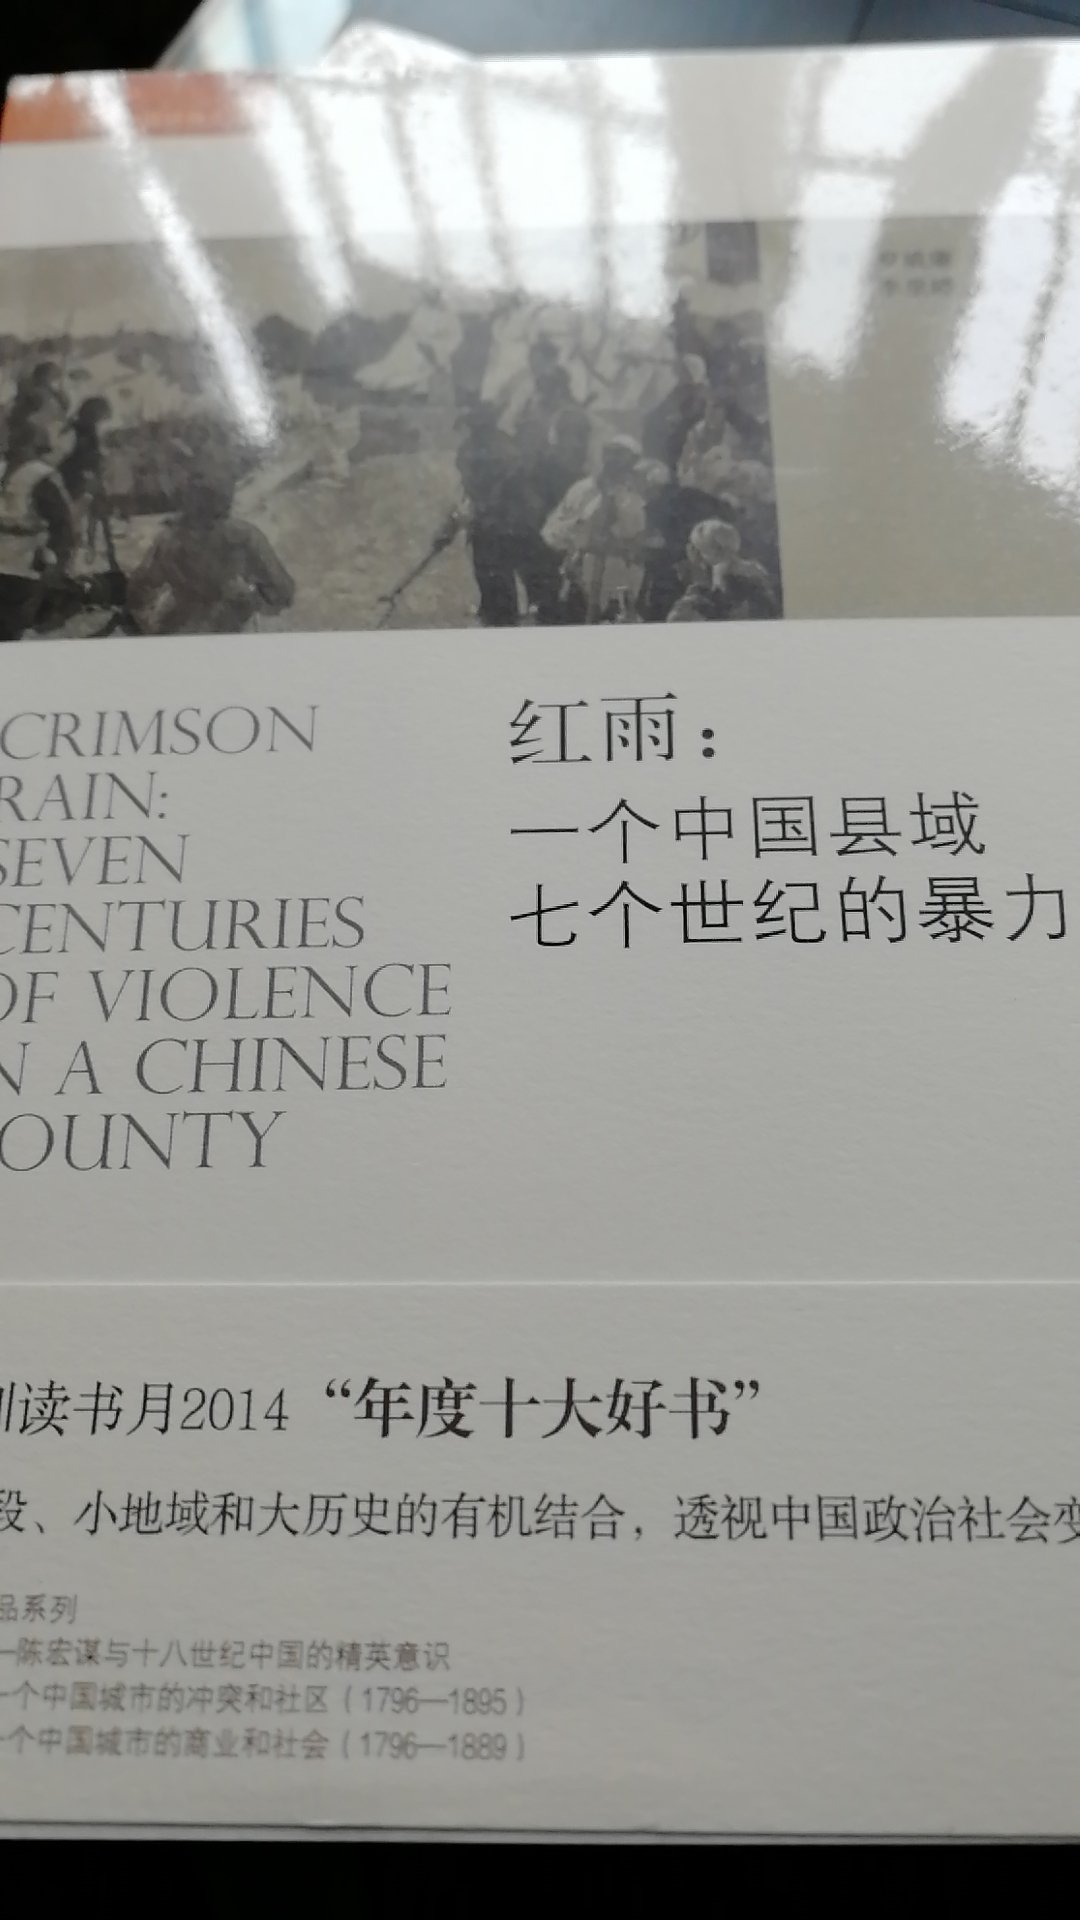 罗威廉的《红雨》对一个中国县城七个世纪的暴力的历史考察极为精彩。